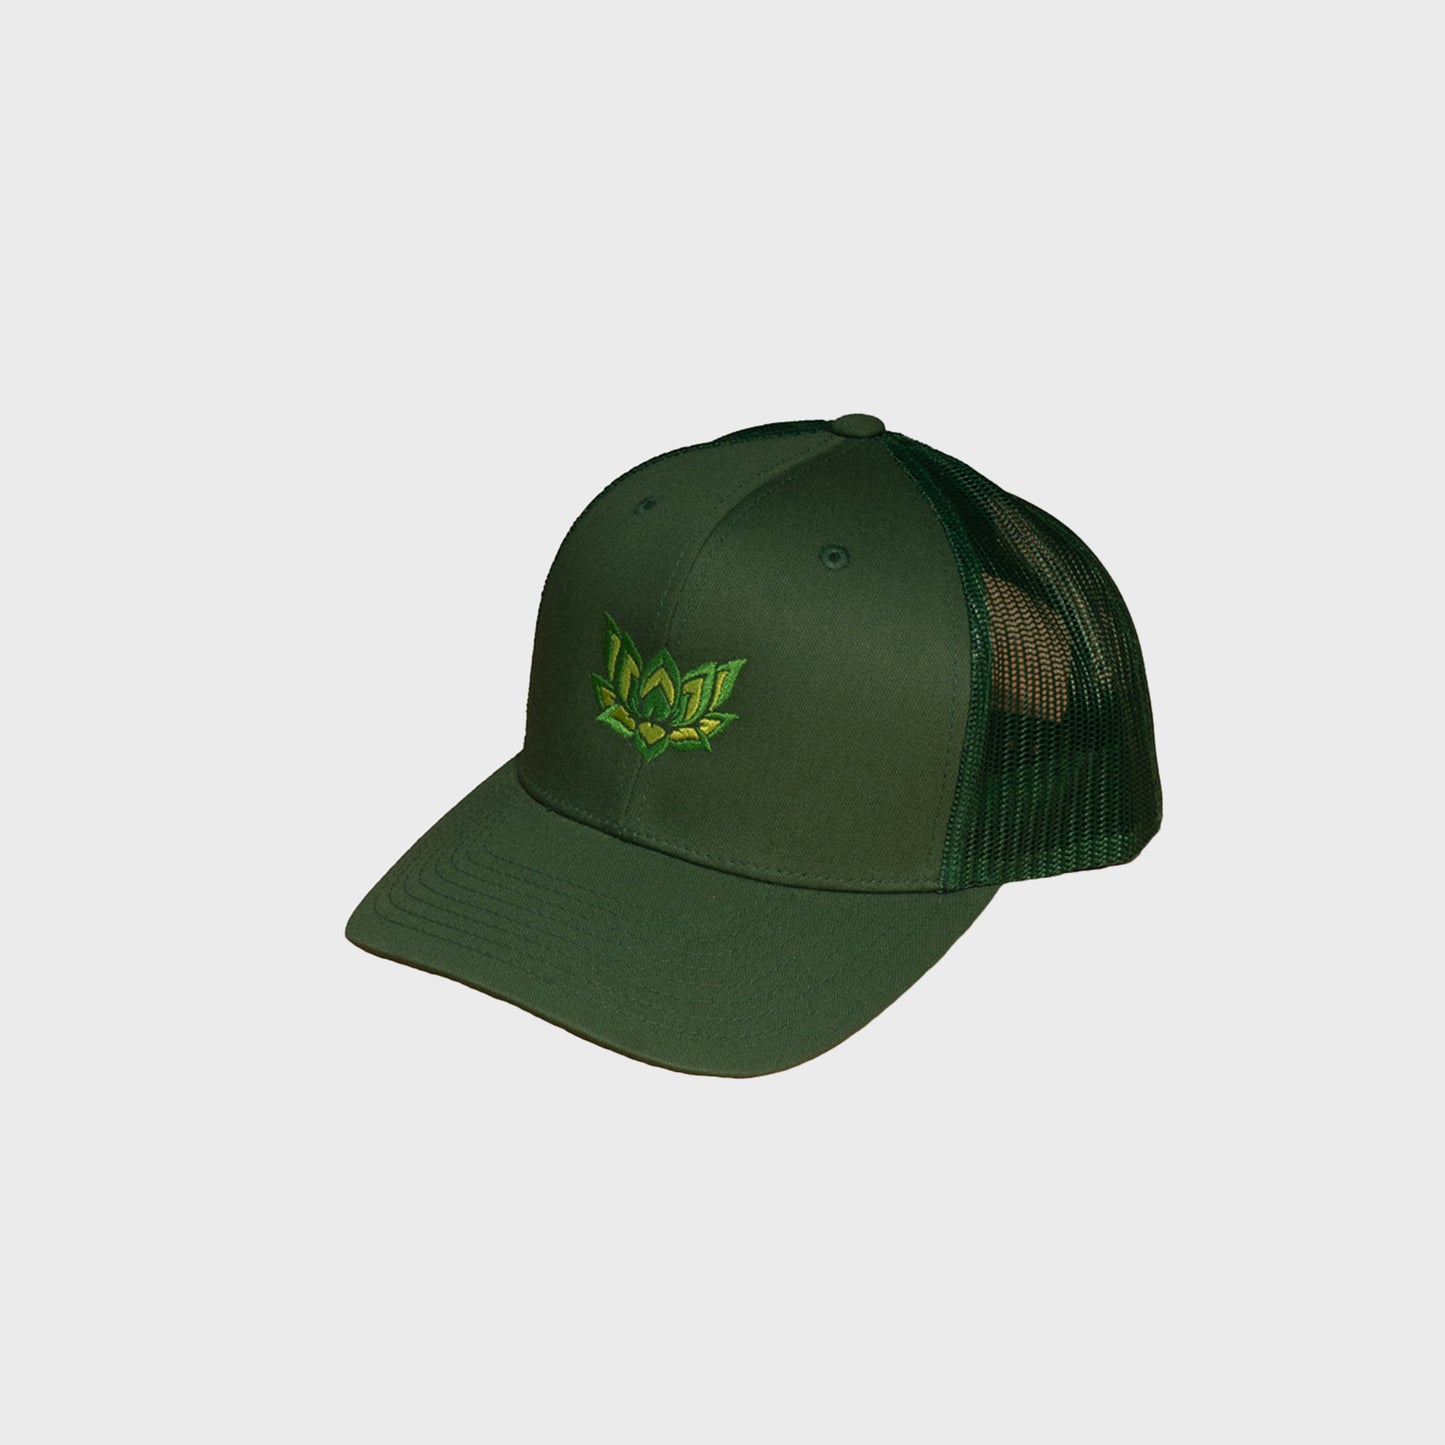 LOTUS TRUCKER CAP - GREEN